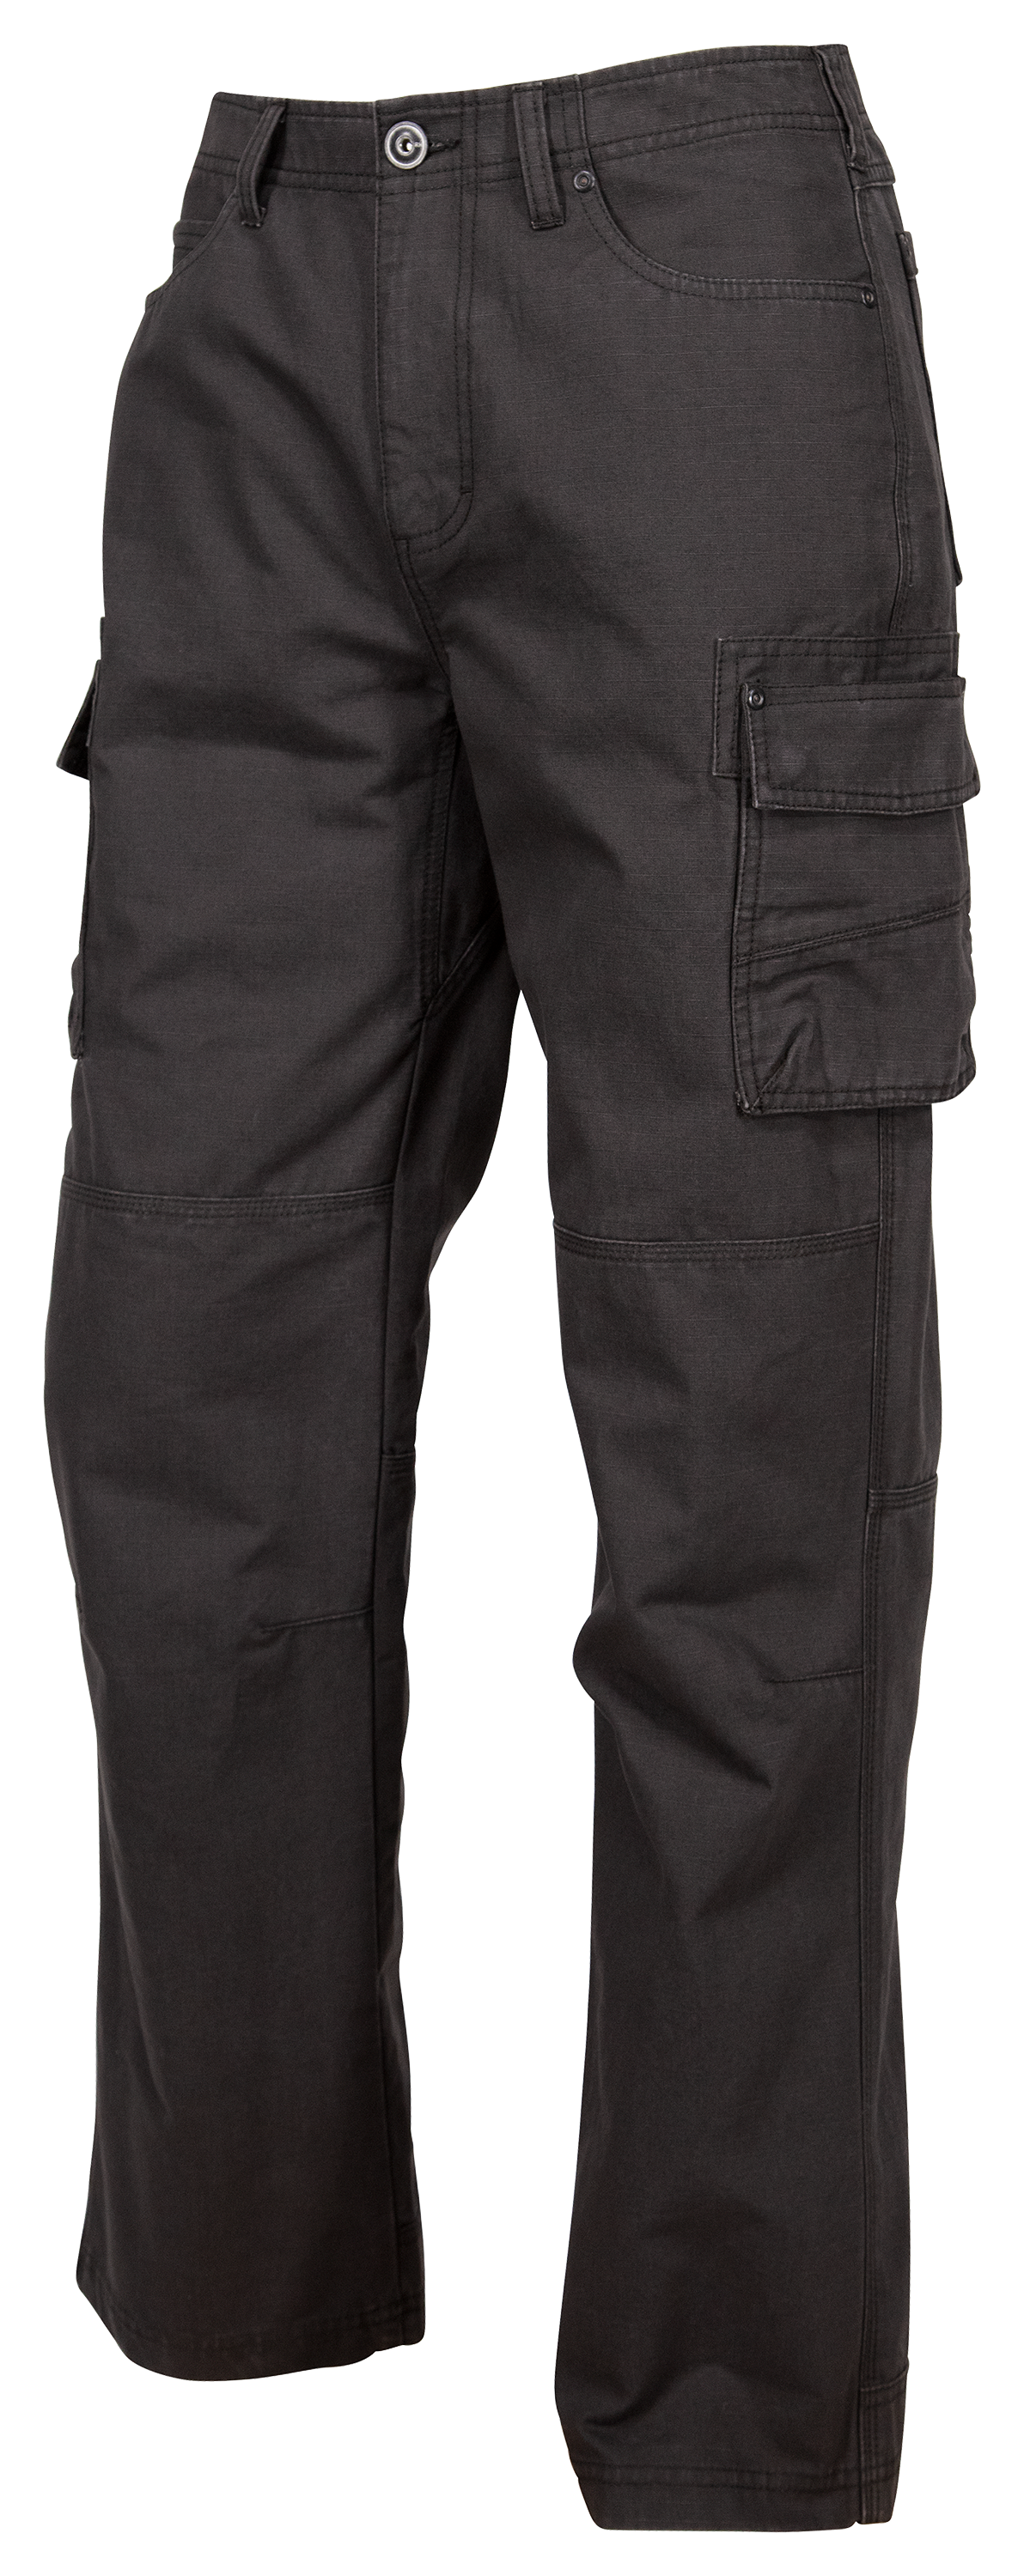 Cabelas Casuals Ripstop Cargo Pants Women Size 10 Regular Beige